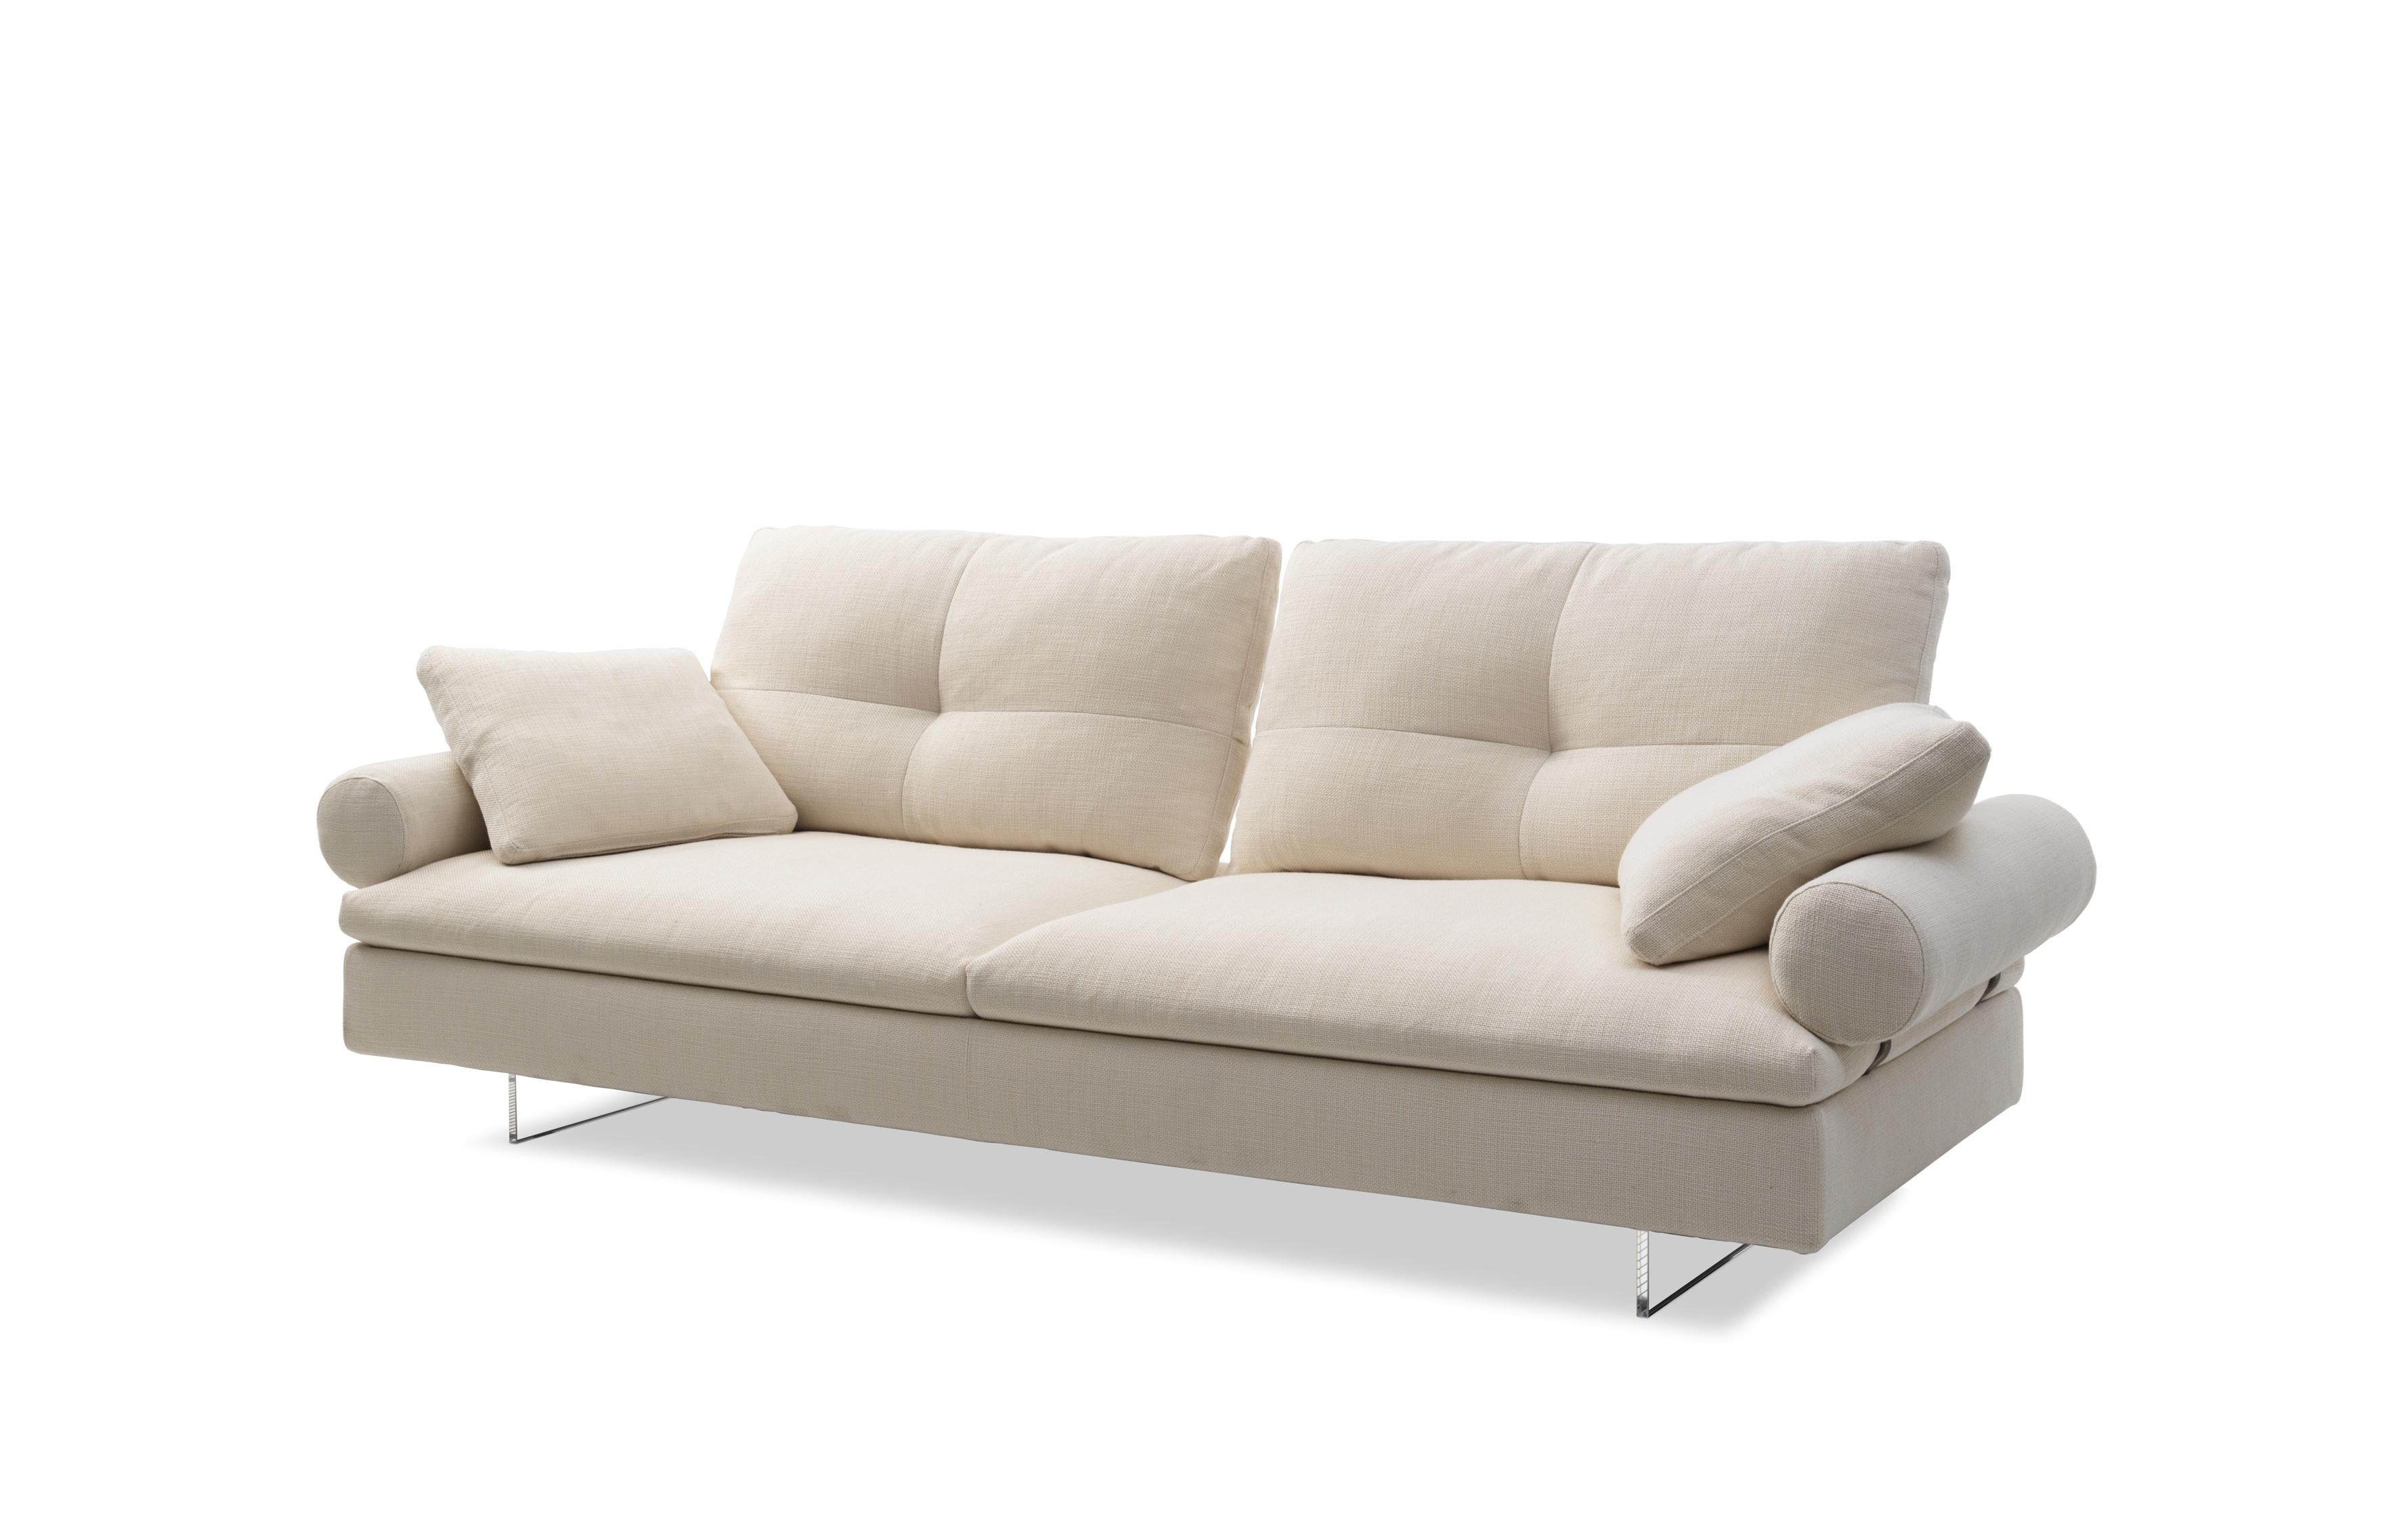 Limes New ist ein Sofa, das den philosophischen Ansatz von Saba für ein größeres Einrichtungsprojekt widerspiegelt: 